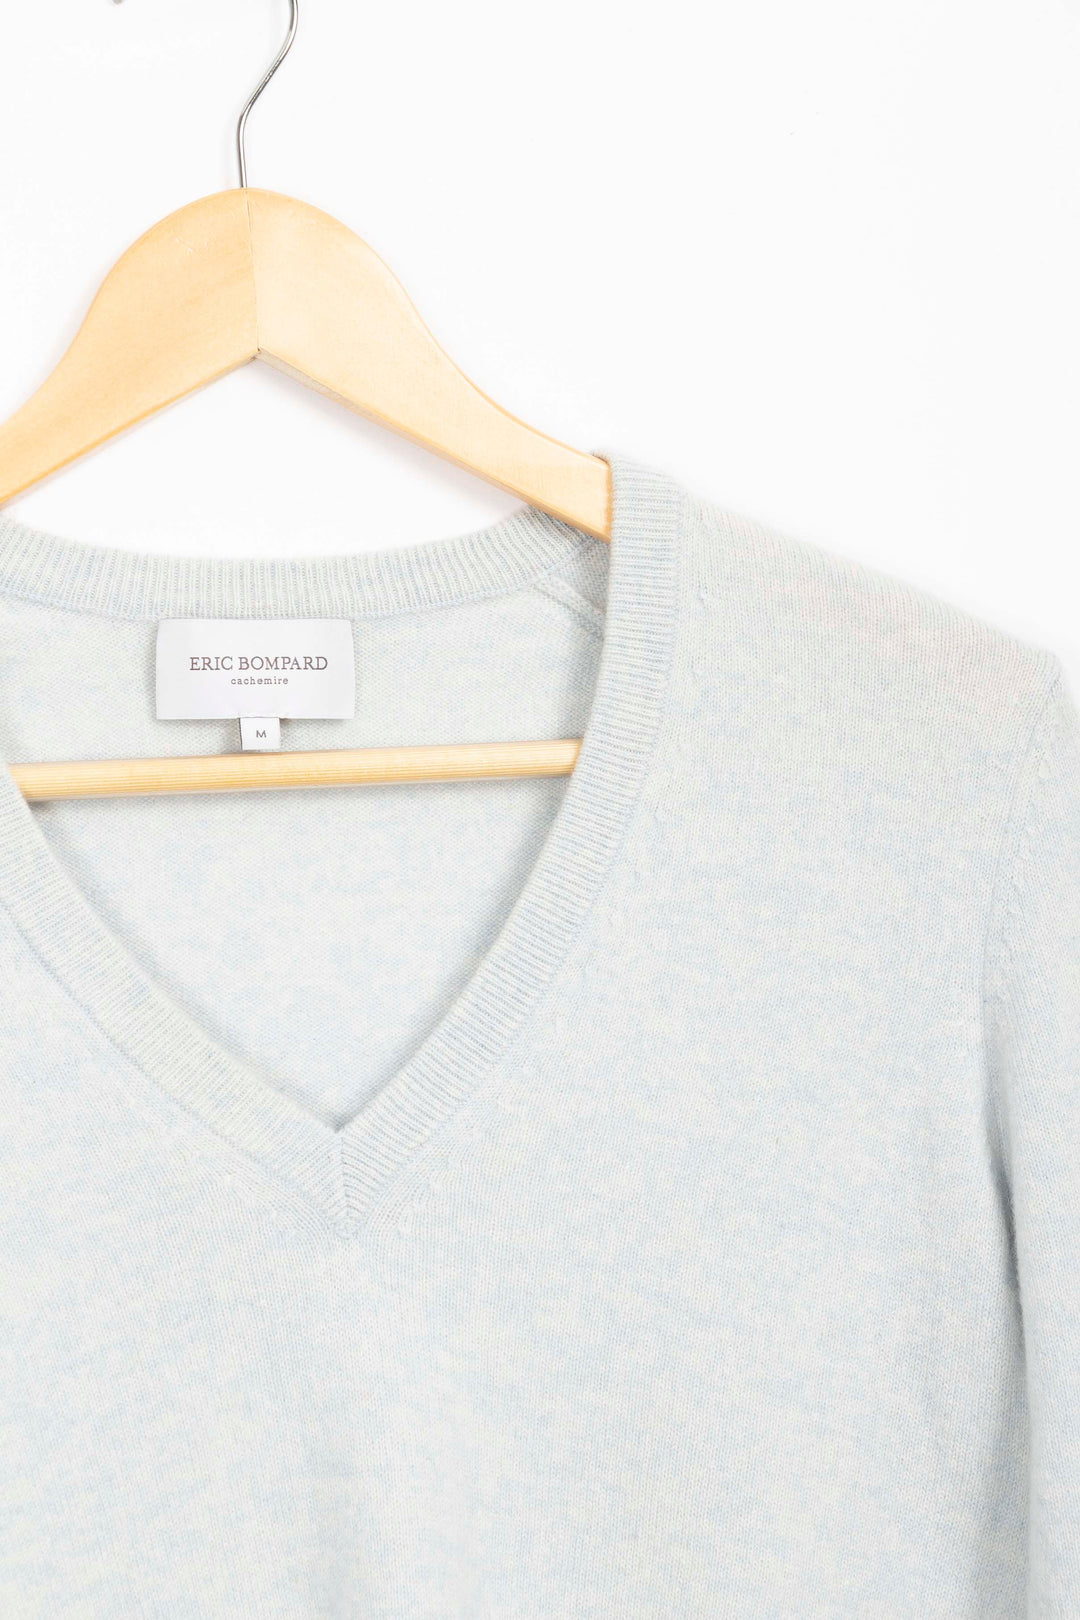 Eric Bompard cashmere sweater - M